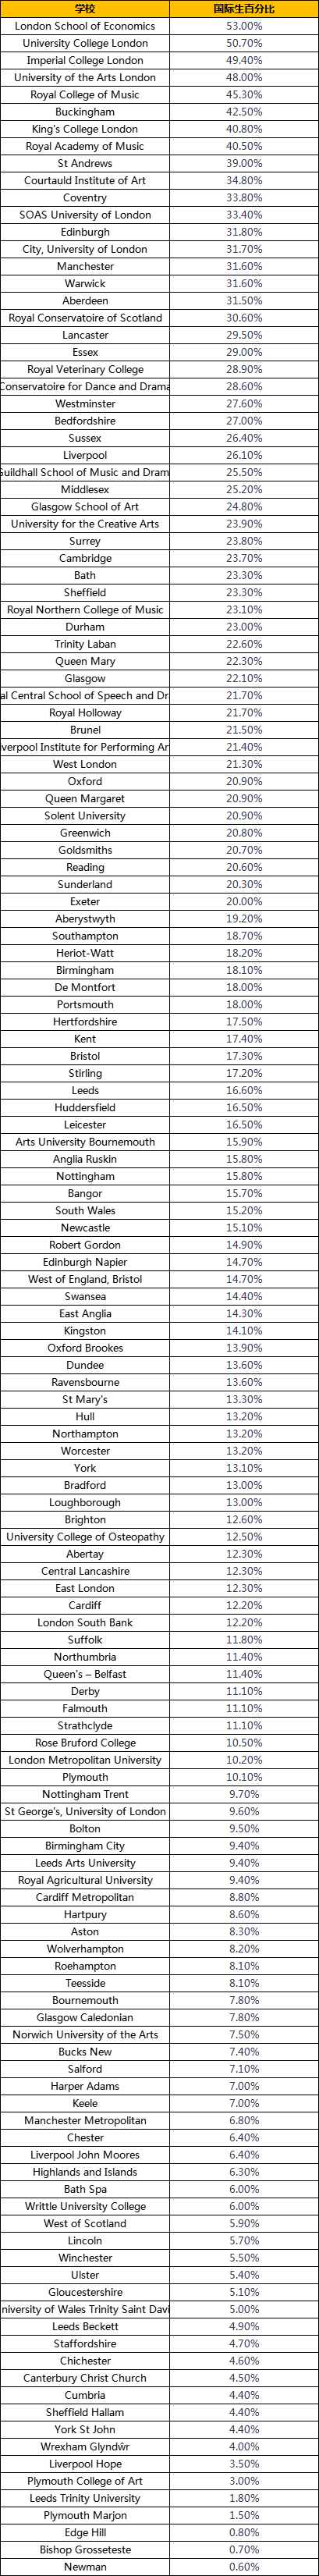 英国各大院校的国际生比例是多少？国际生比例高的院校是哪些？